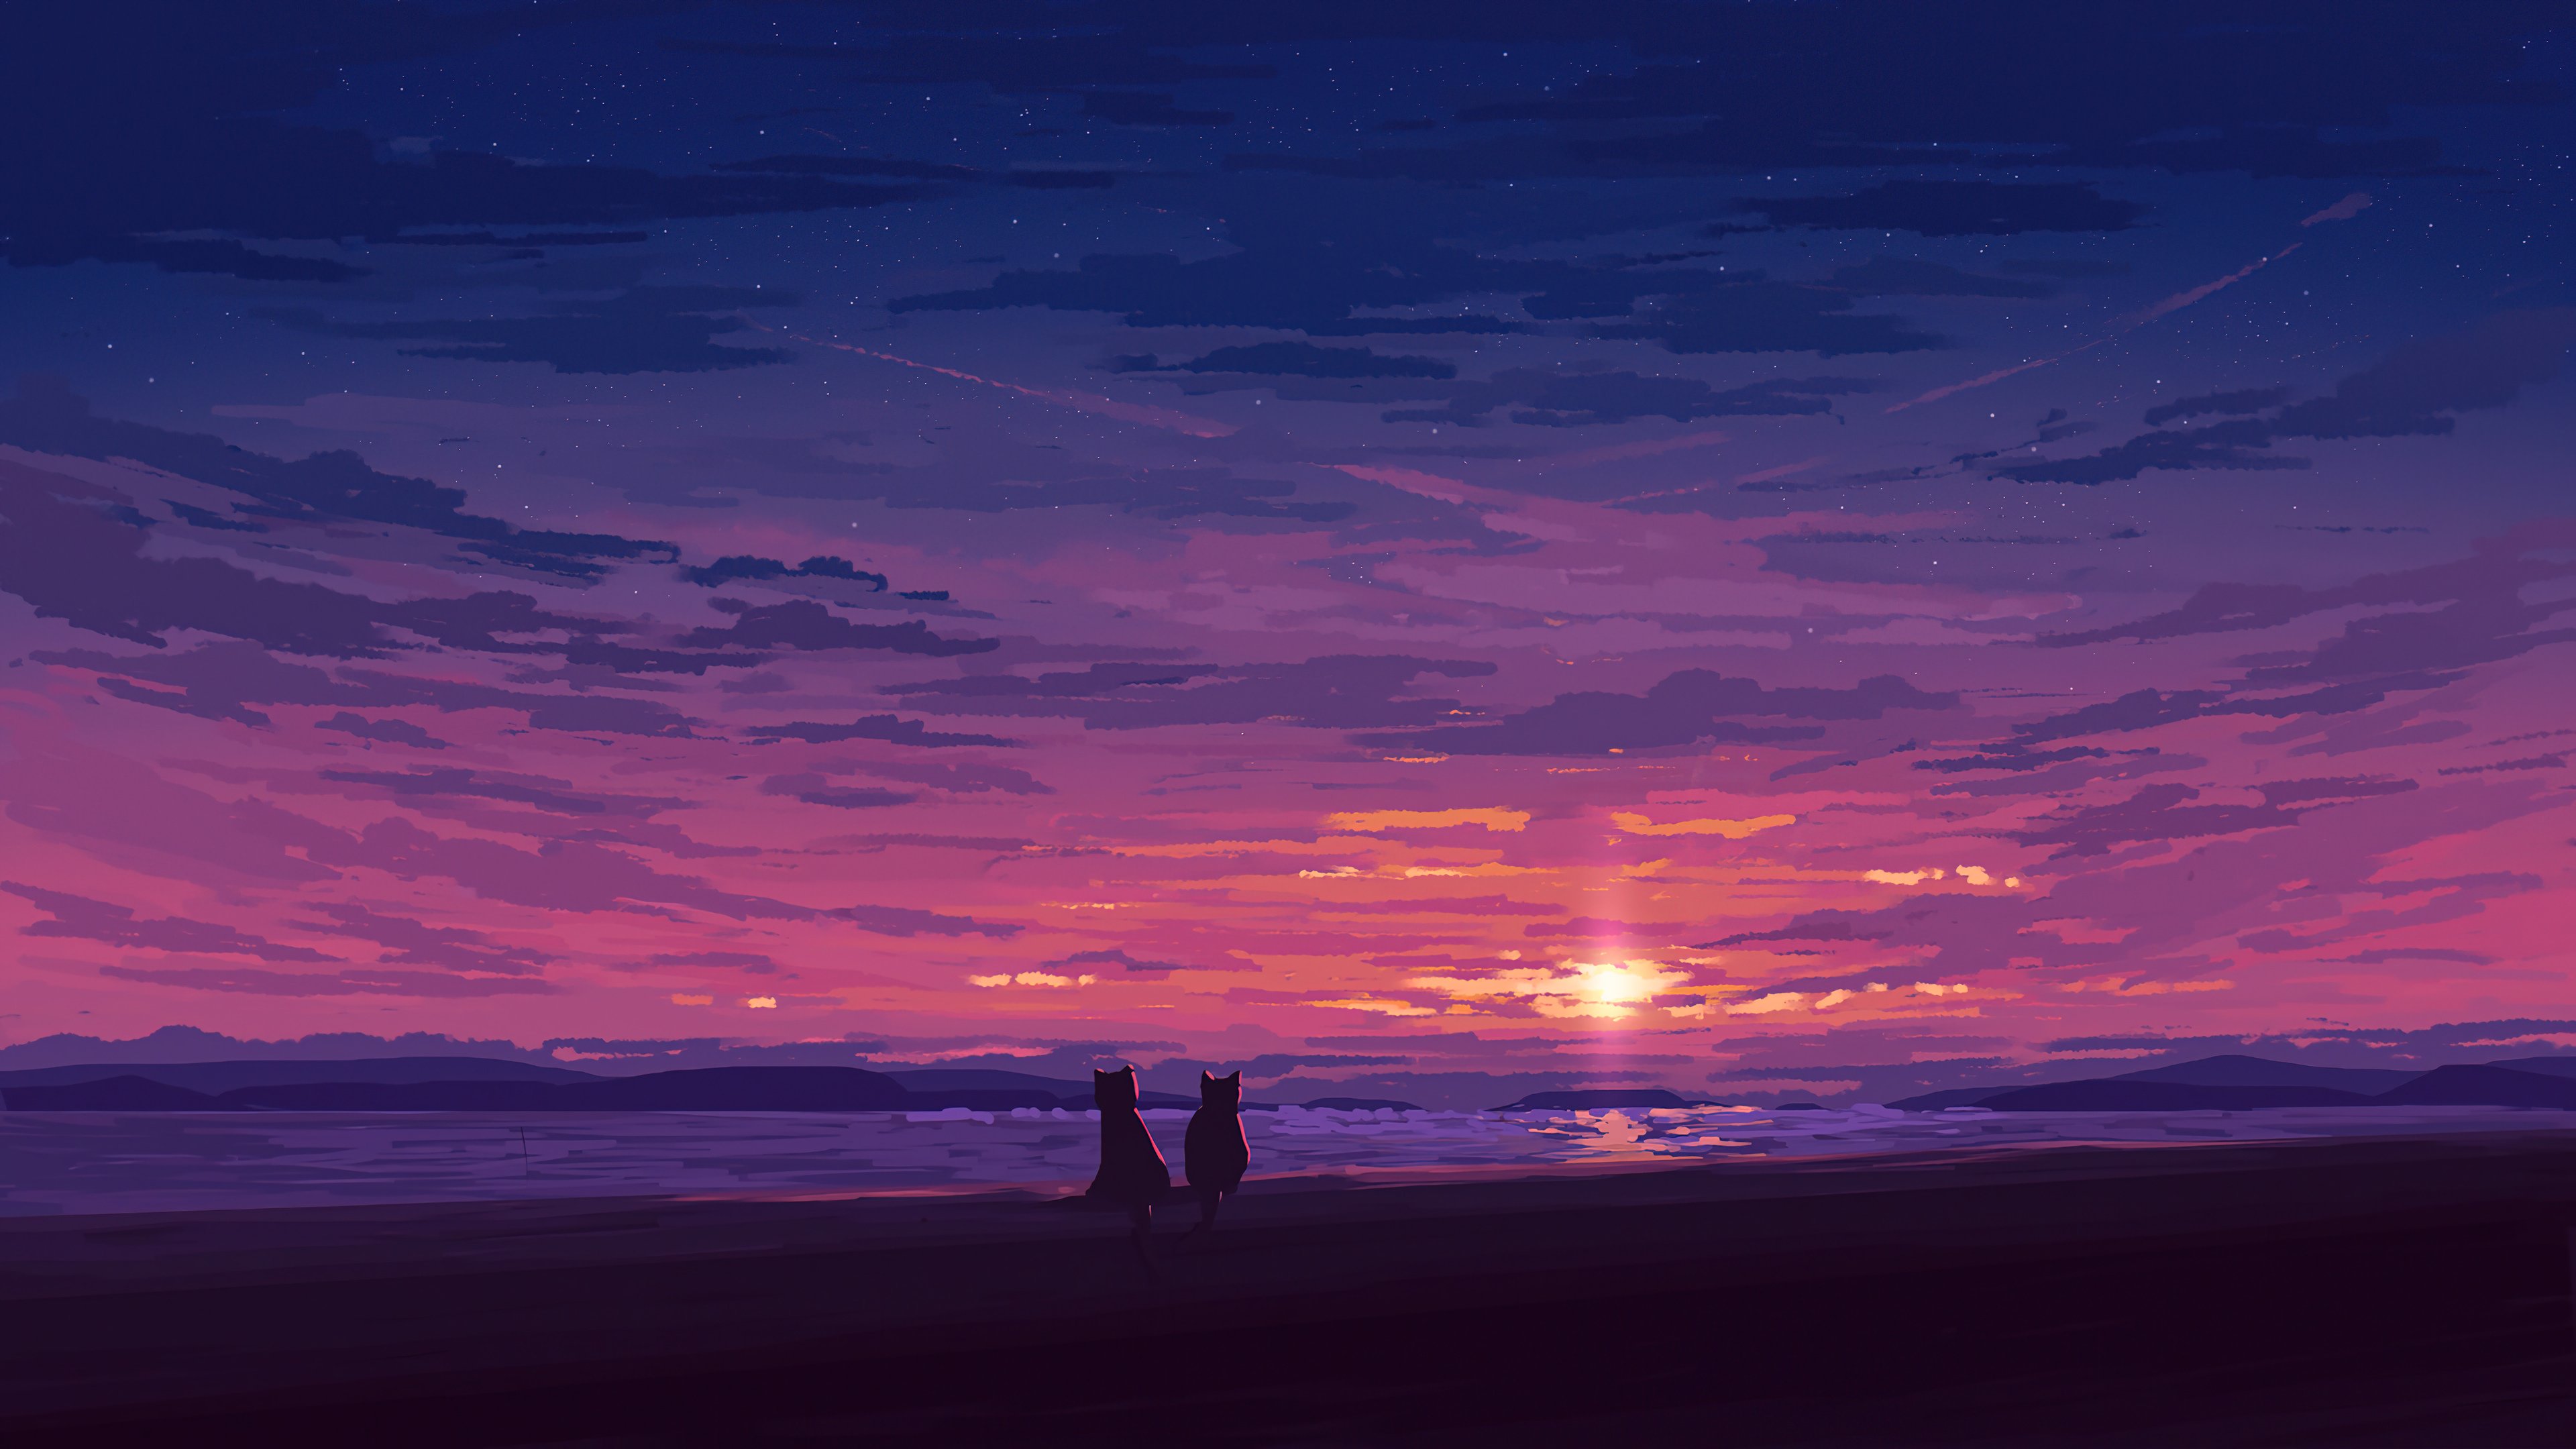 Fondos de pantalla Sunset at the beach Digital Art